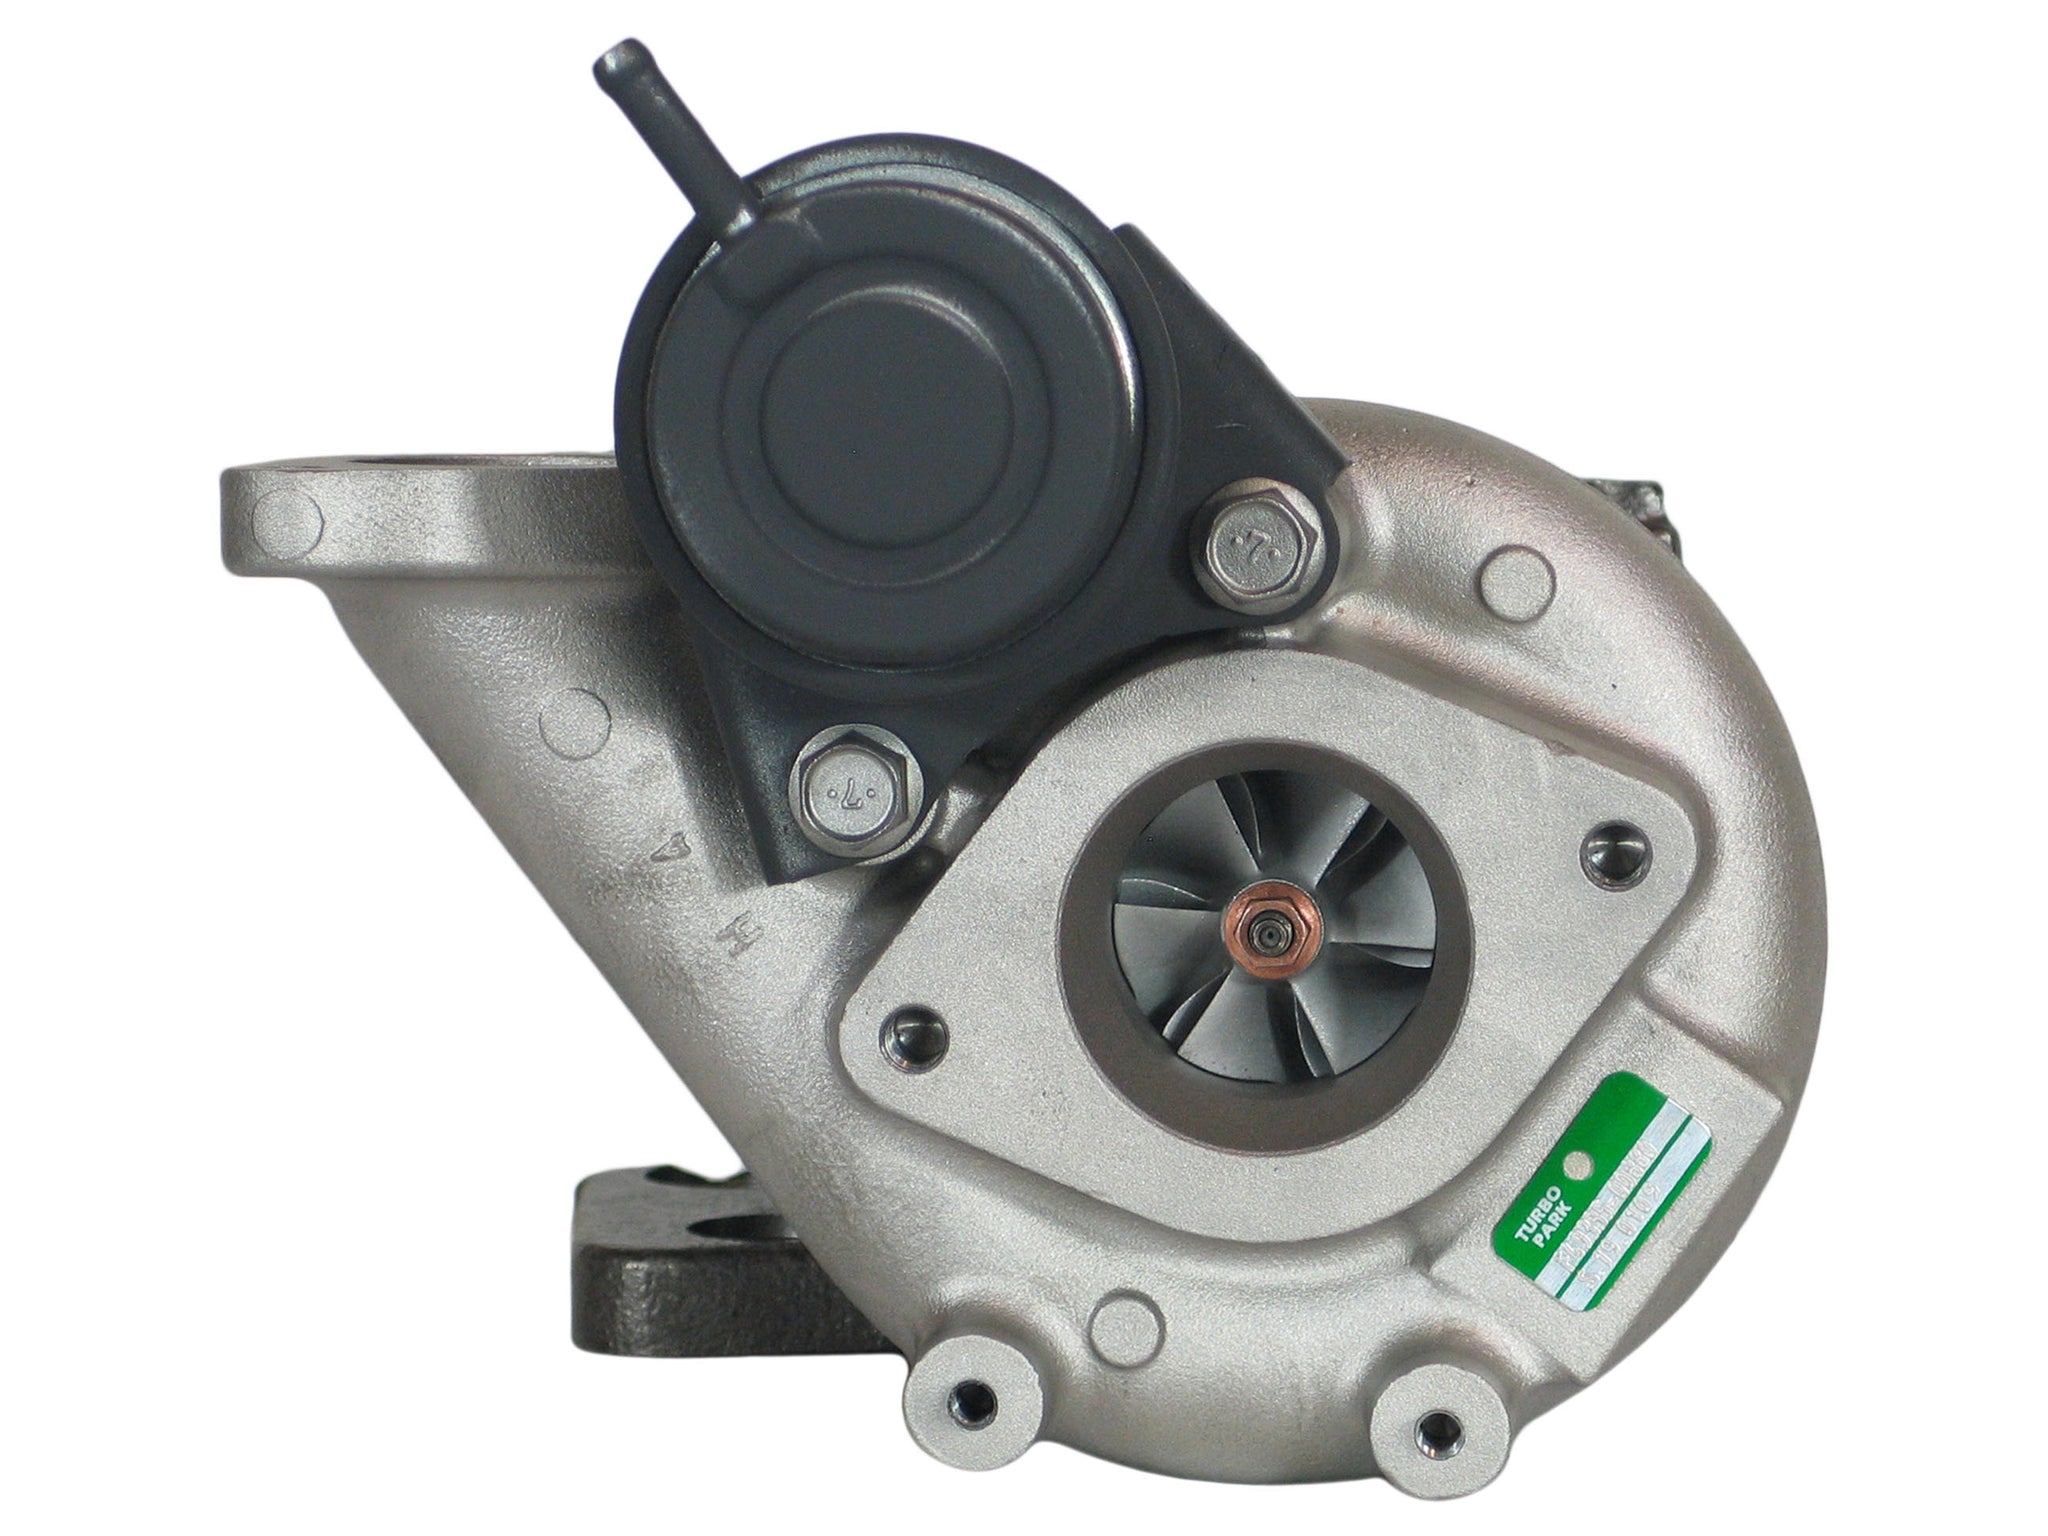 TF035HL8 Turbocharger for Nissan Juke MR16DDT 1.6L Gas Engine 49335-00880 Turbo